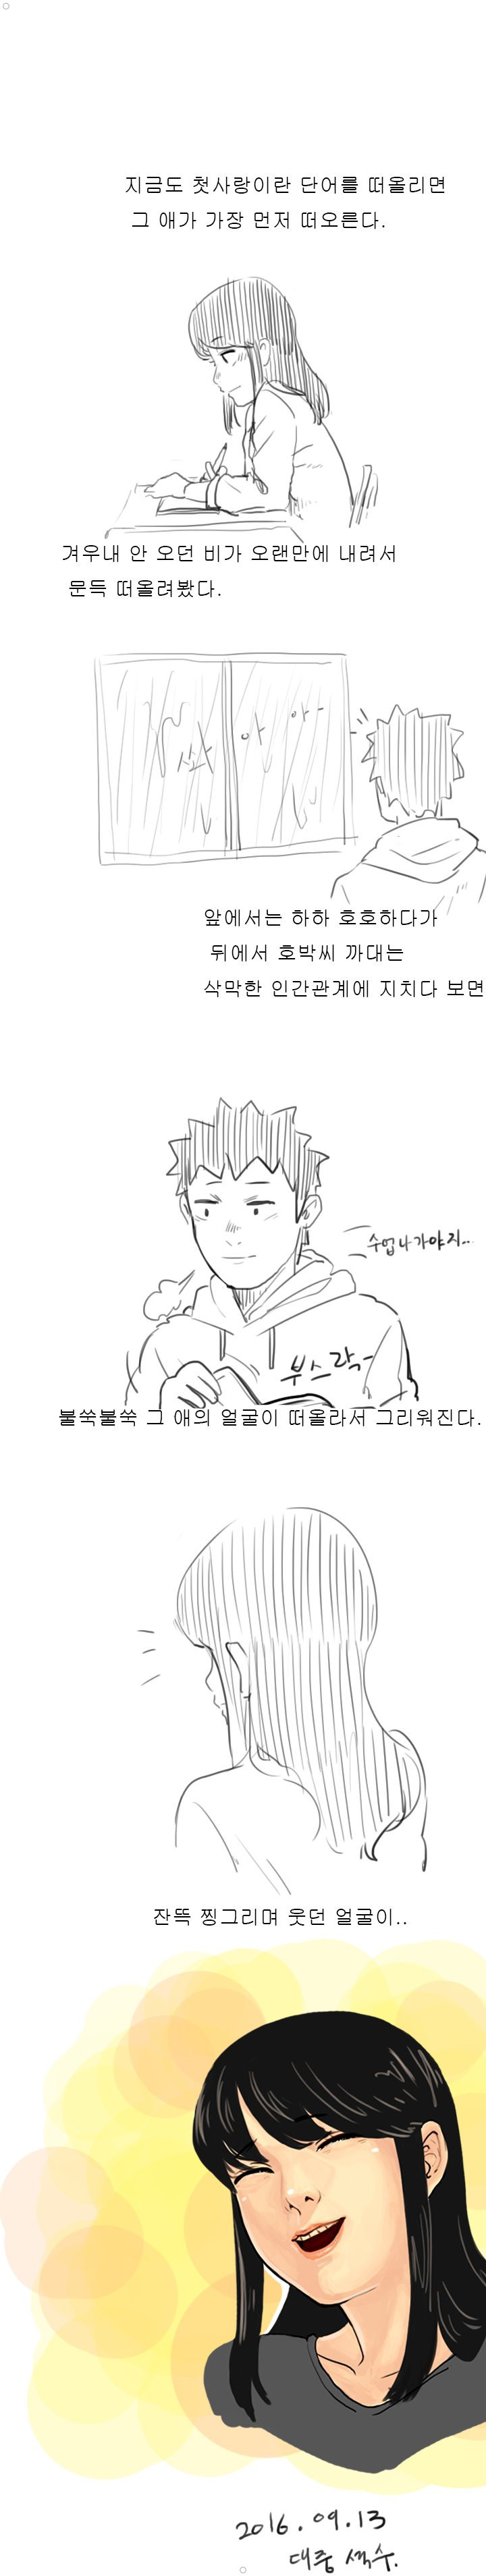 추억의 청각장애인 처자애랑 짝이었던 썰만화 ㅎㅎㅎㅎㅎ 이미지 #12